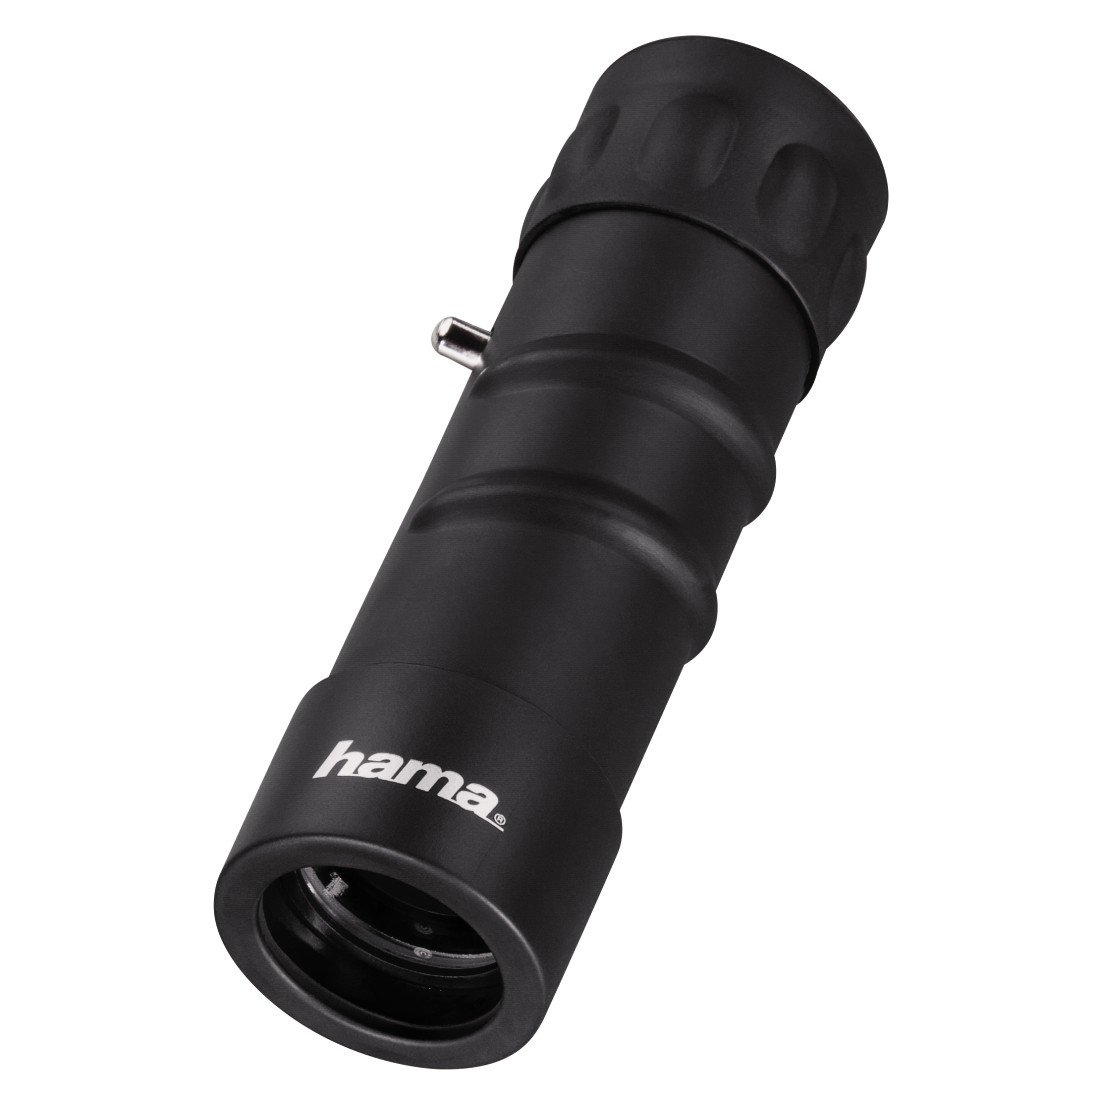 Hama Kompaktes Monokular für scharfe Weitsicht, 10-fach Vergrößerung, Objektivdurchmesser 25 mm, Optec, Schwarz